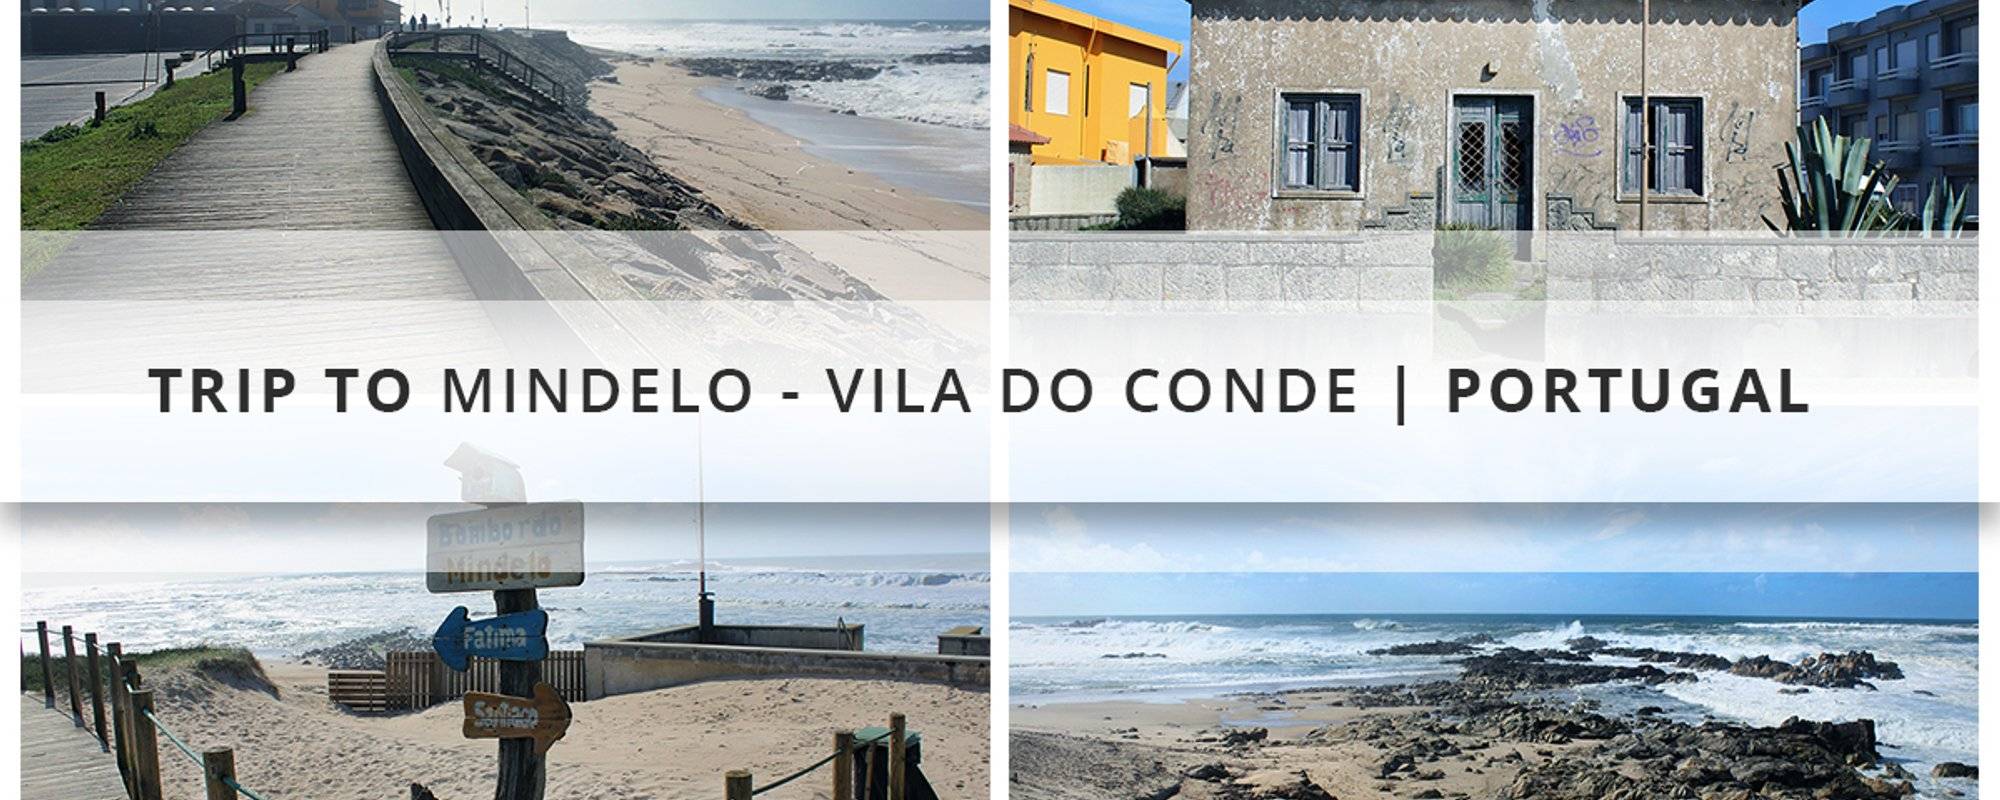 Trip to Mindelo - Vila do Conde | Portugal